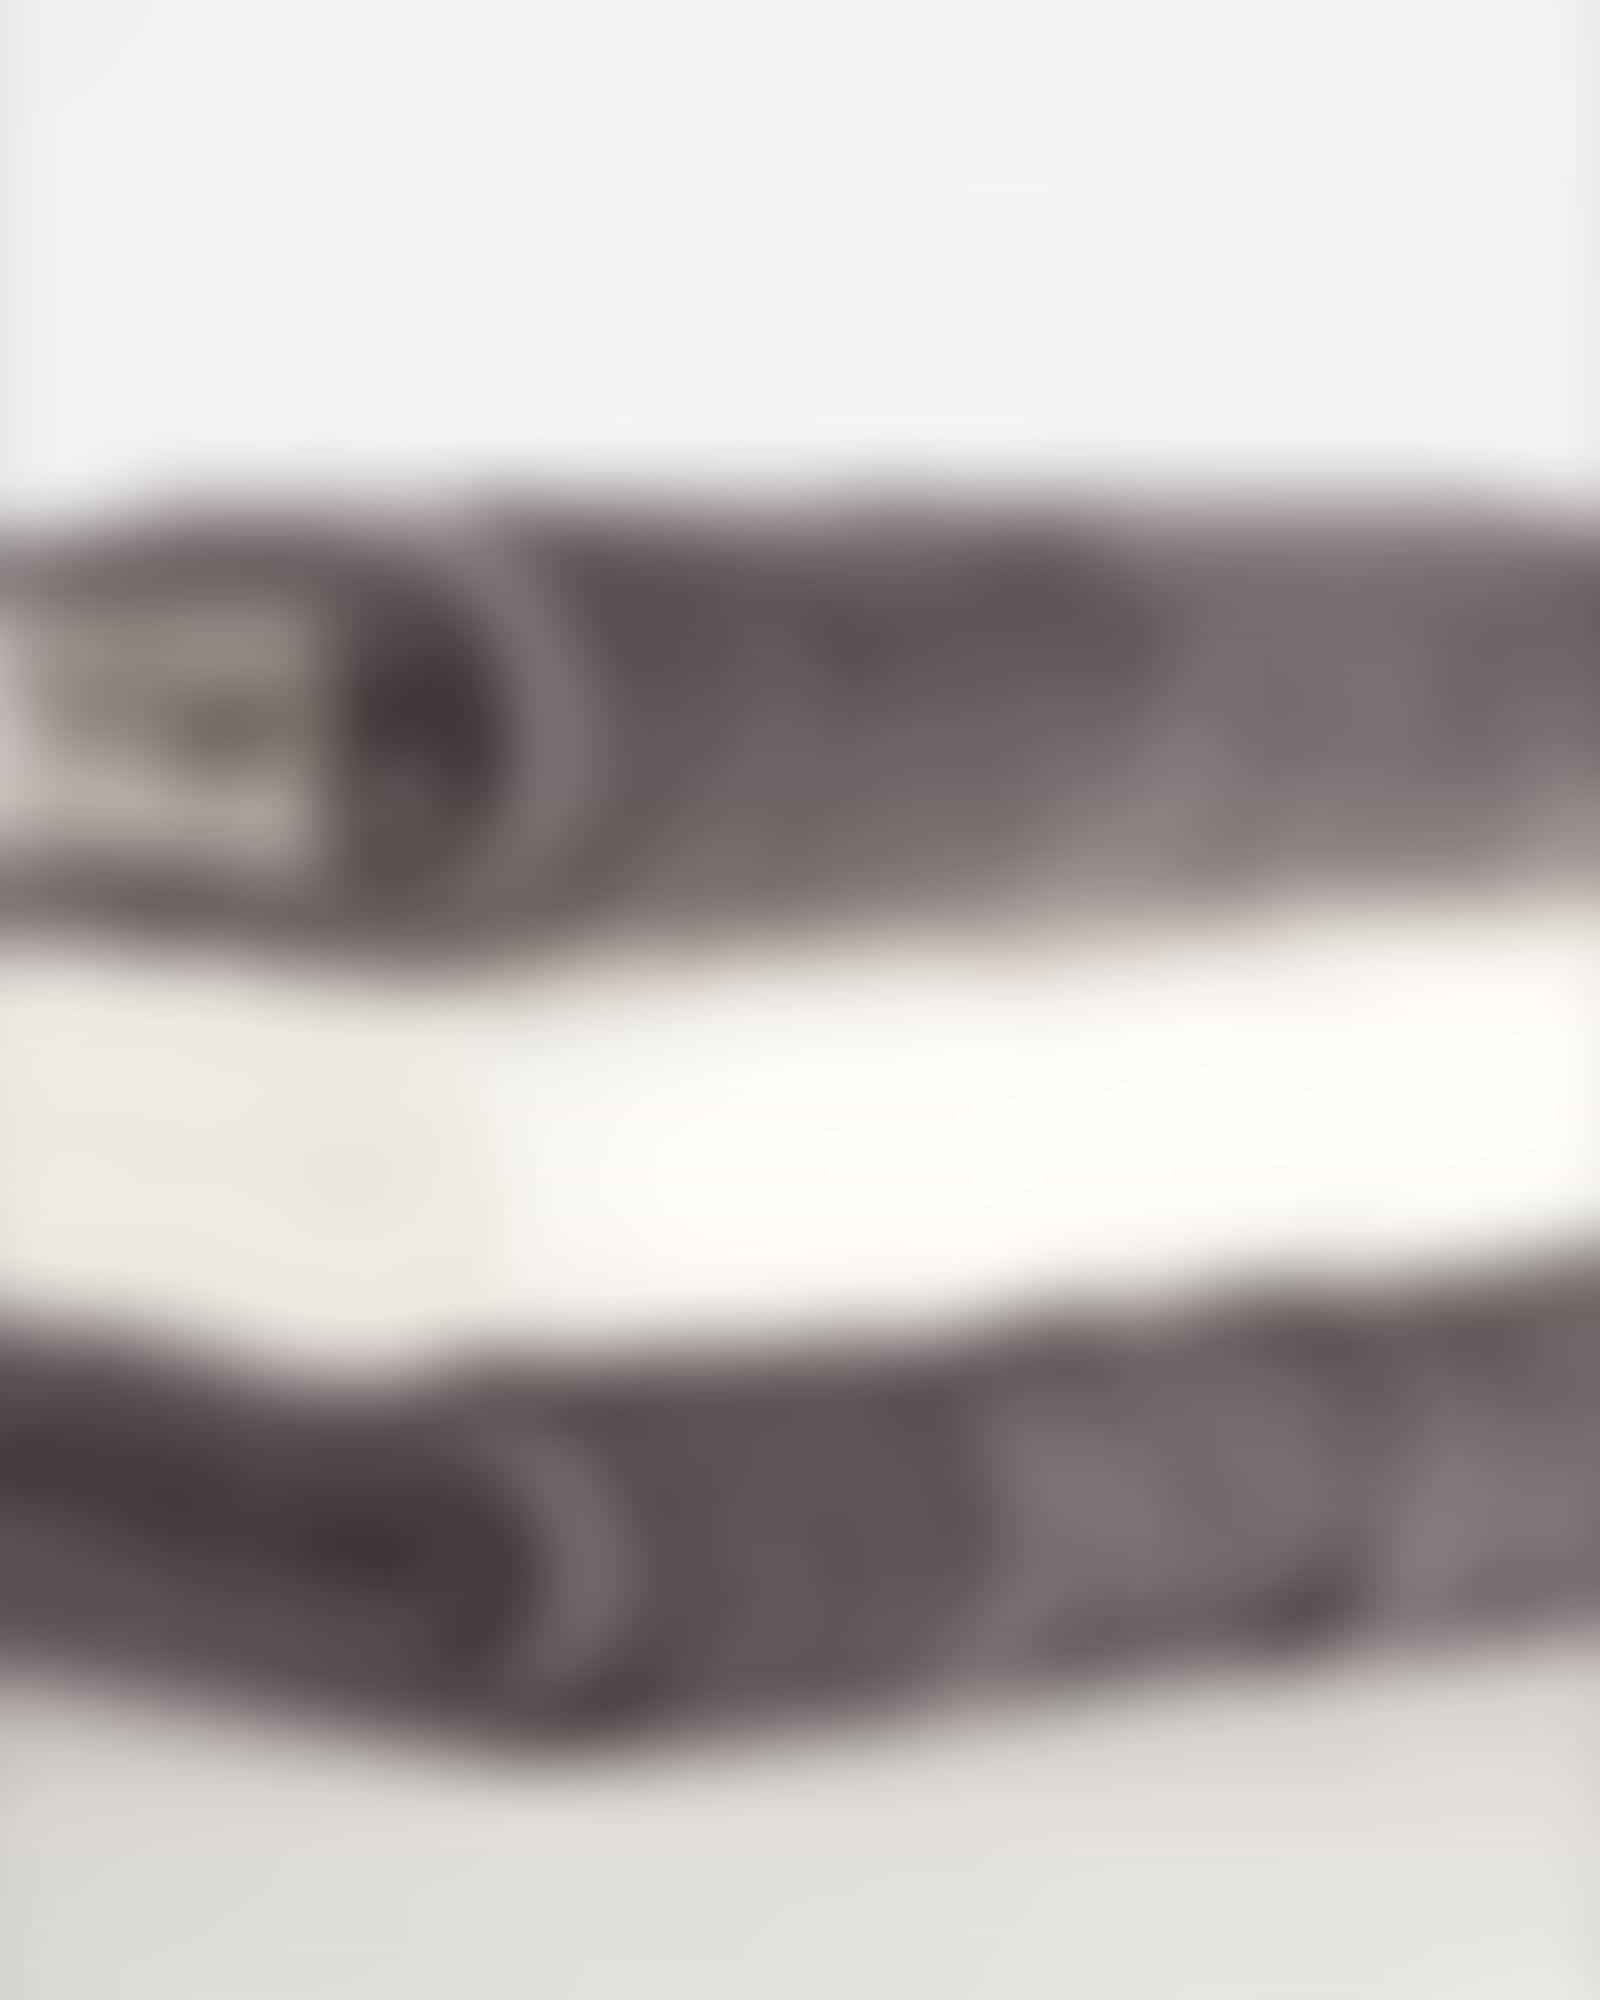 Cawö Handtücher Noblesse Stripe 1087 - Farbe: anthrazit - 77 - Gästetuch 30x50 cm